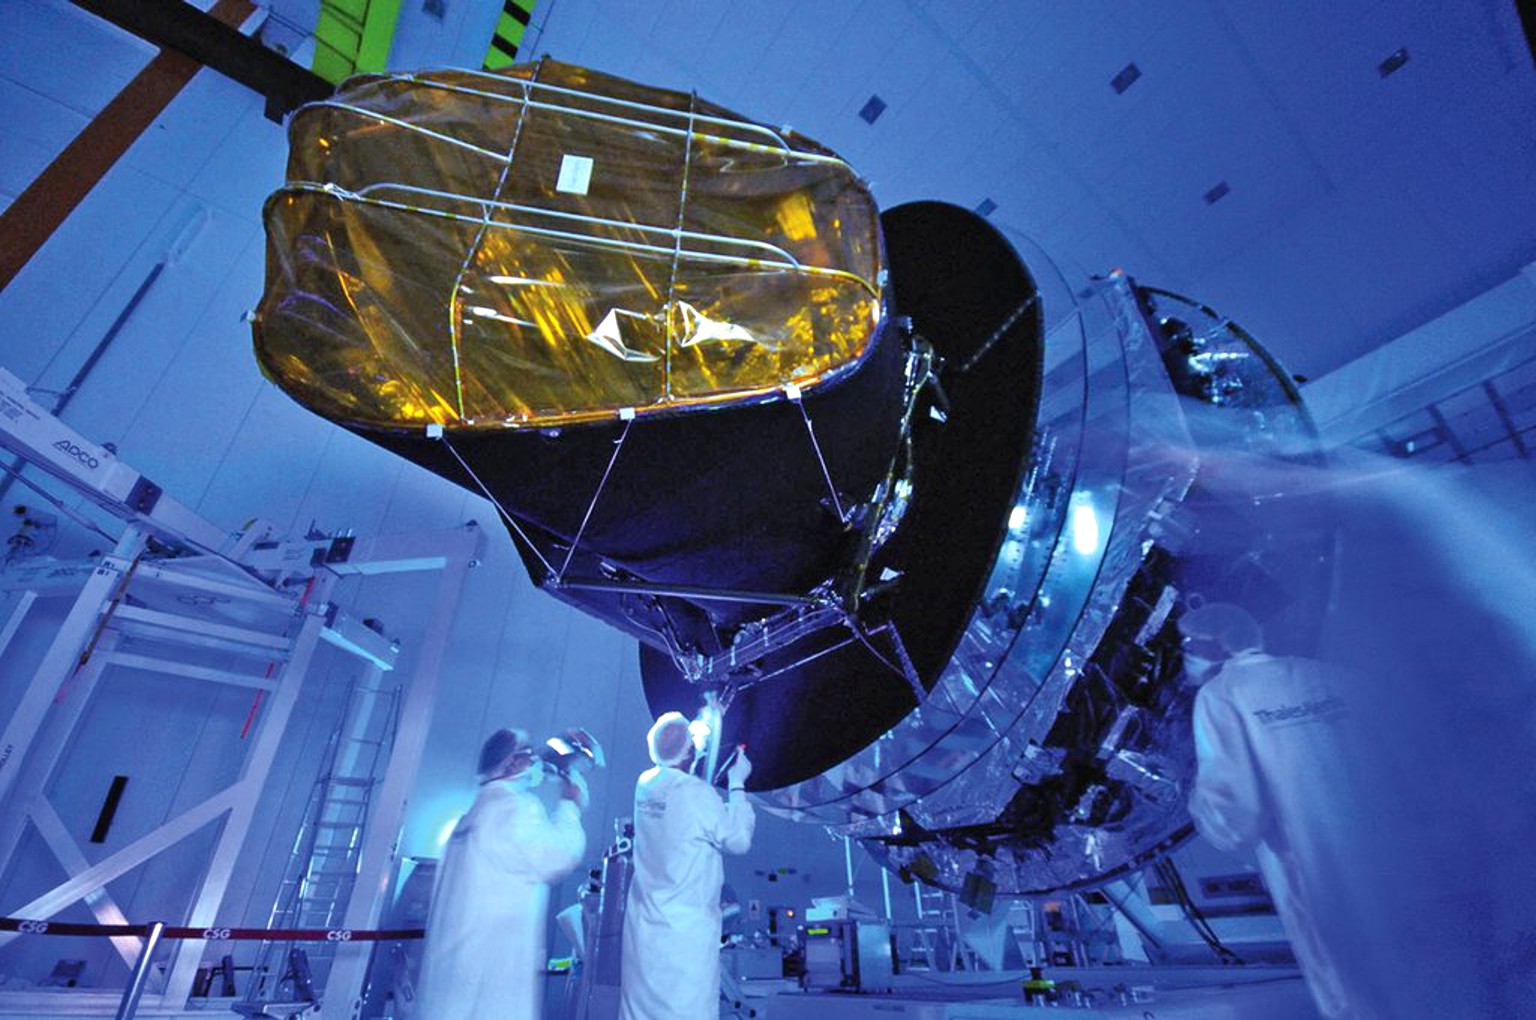 Крупнейший телескоп на орбите